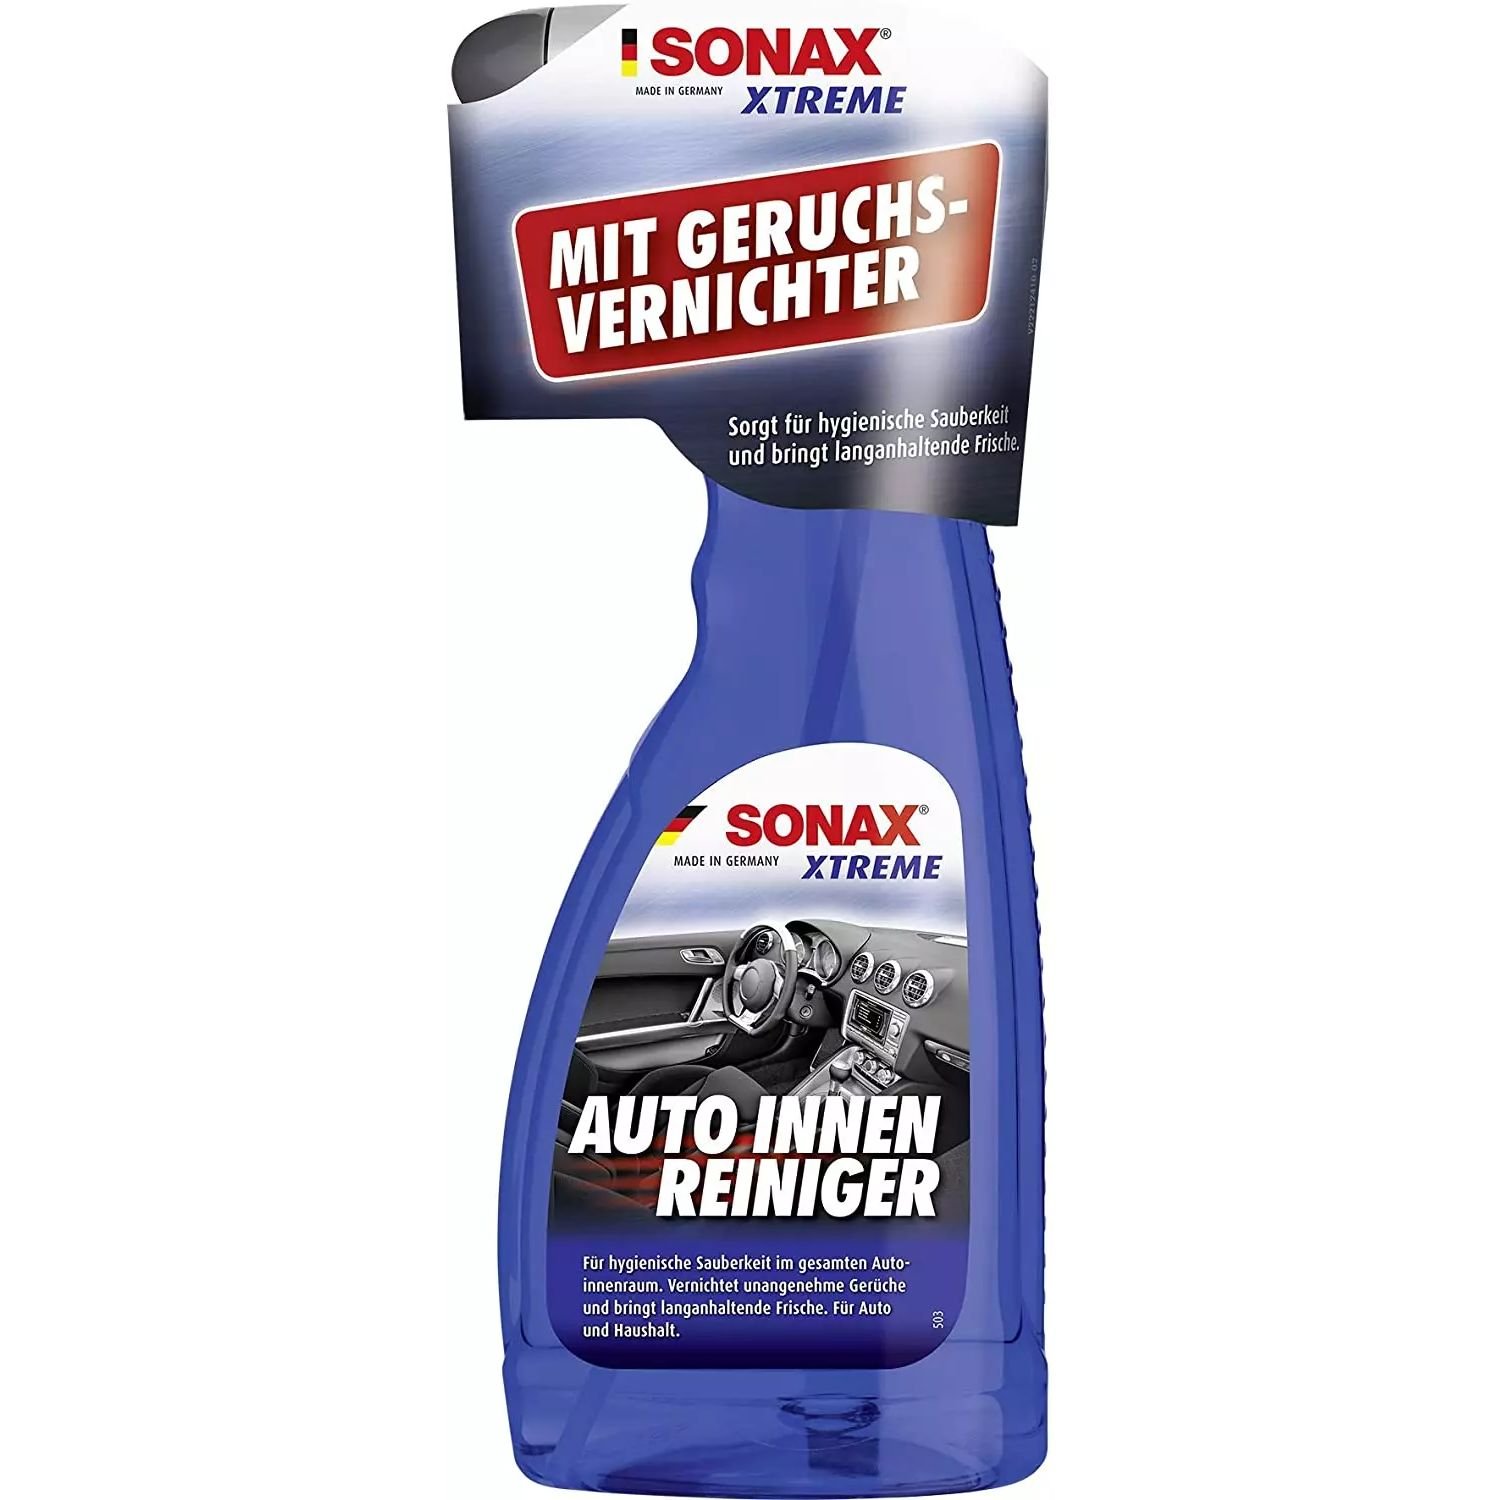 Очисник салону автомобіля, пятновыводитель, нейтралізатор запахів Sonax Xtreme Auto Innen Reiniger, 500 мл - фото 4